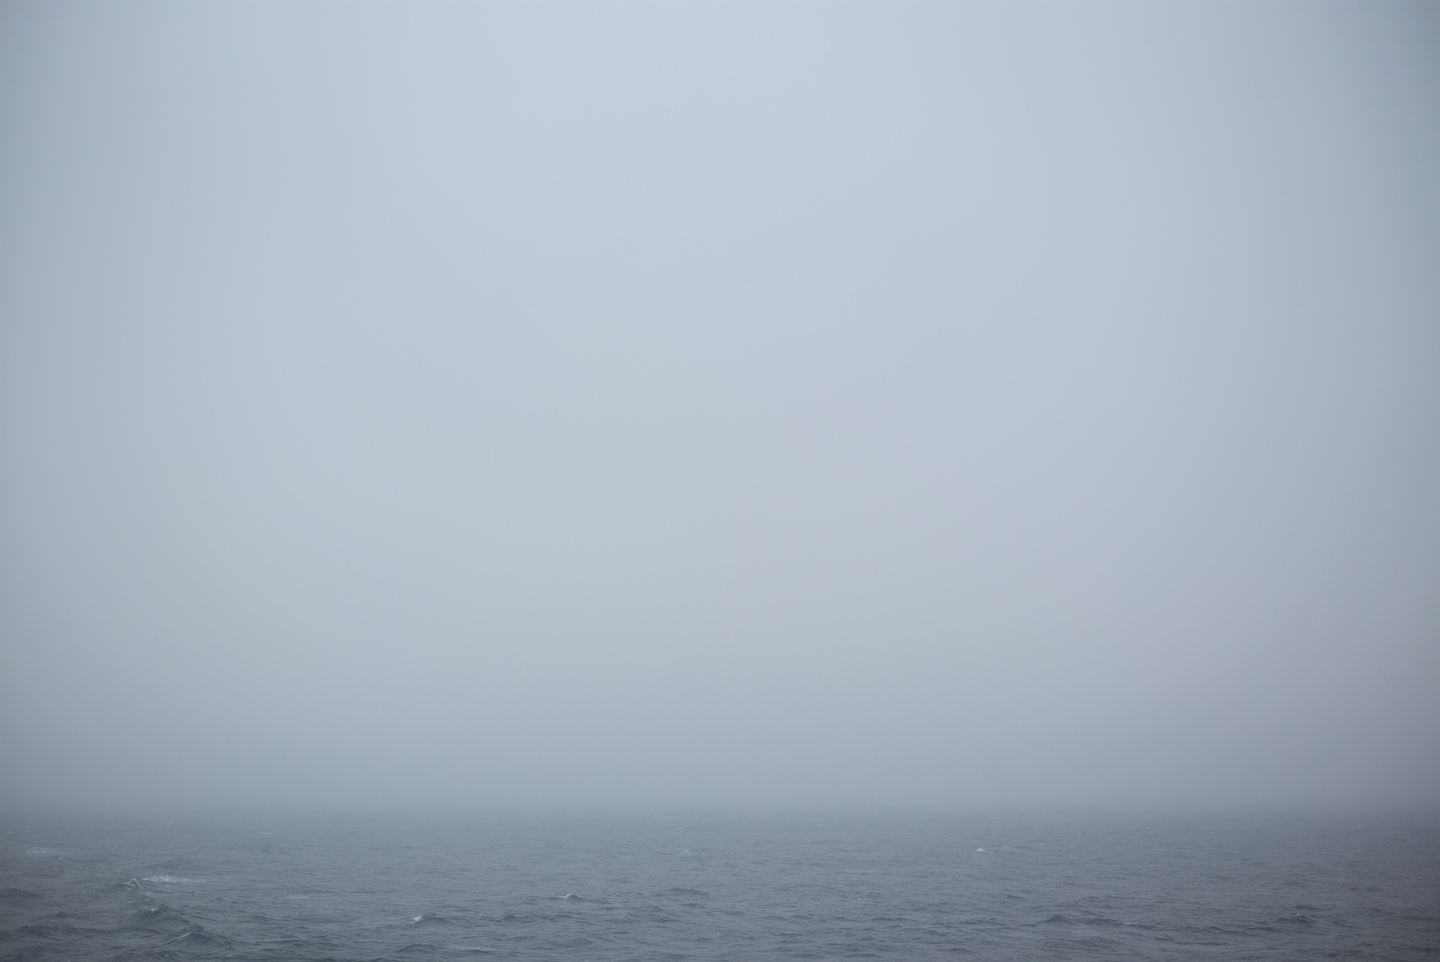 Atlantic Ocean, between Newfoundland and Nova Scotia 2016